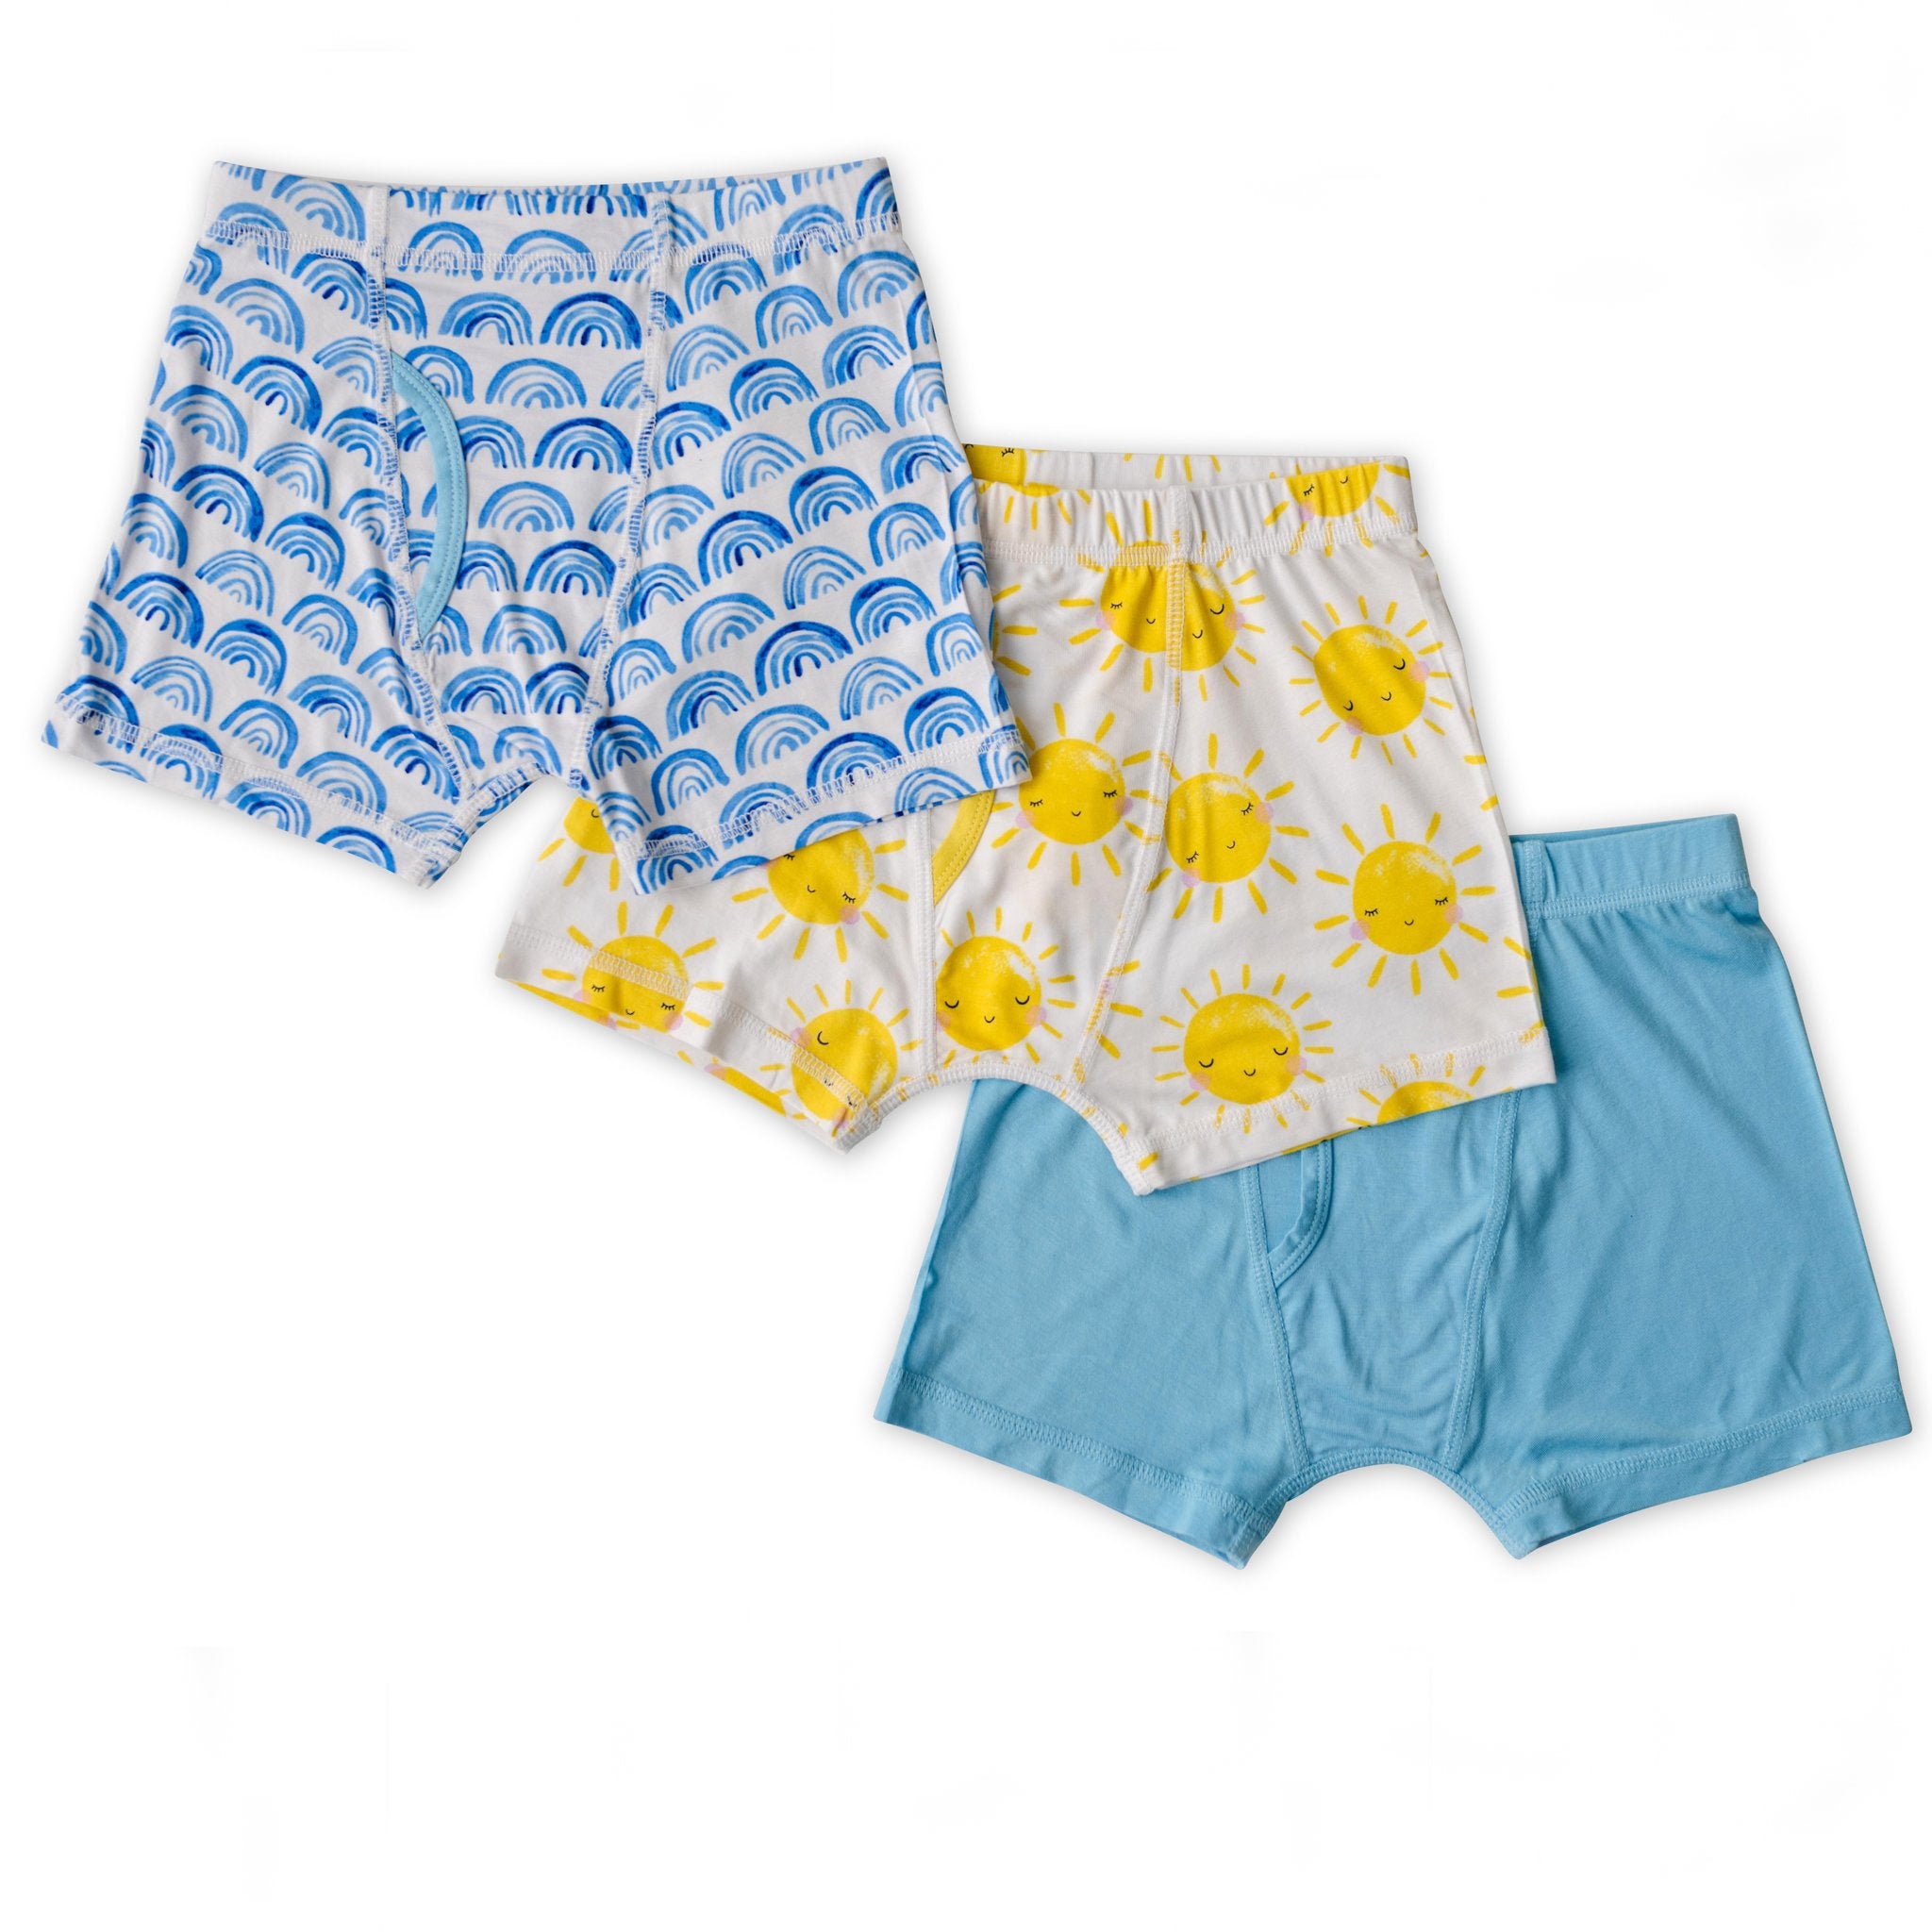 Boy's Boxer Briefs Comfortable Cotton Short Toddler Underwear 5 Pack